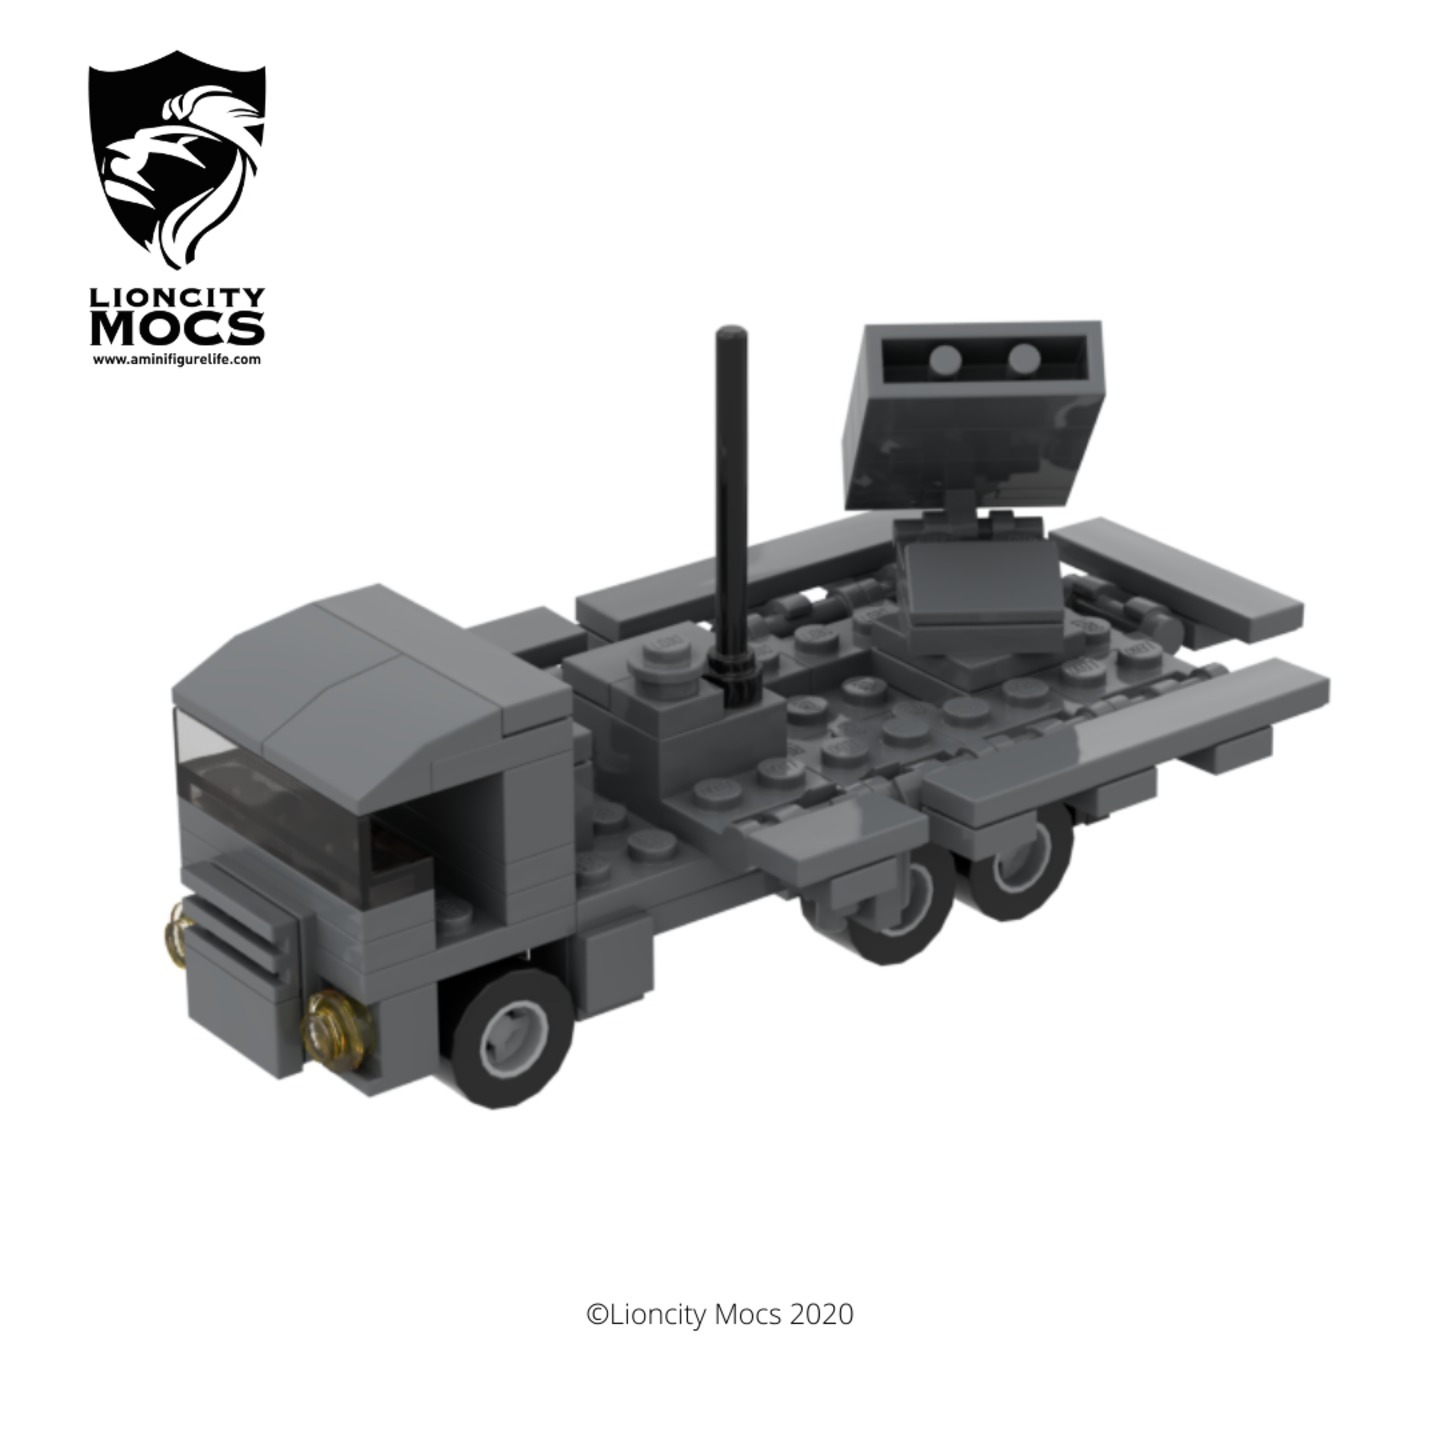 [PDF Instructions Only] SPYDER Mini Vehicle